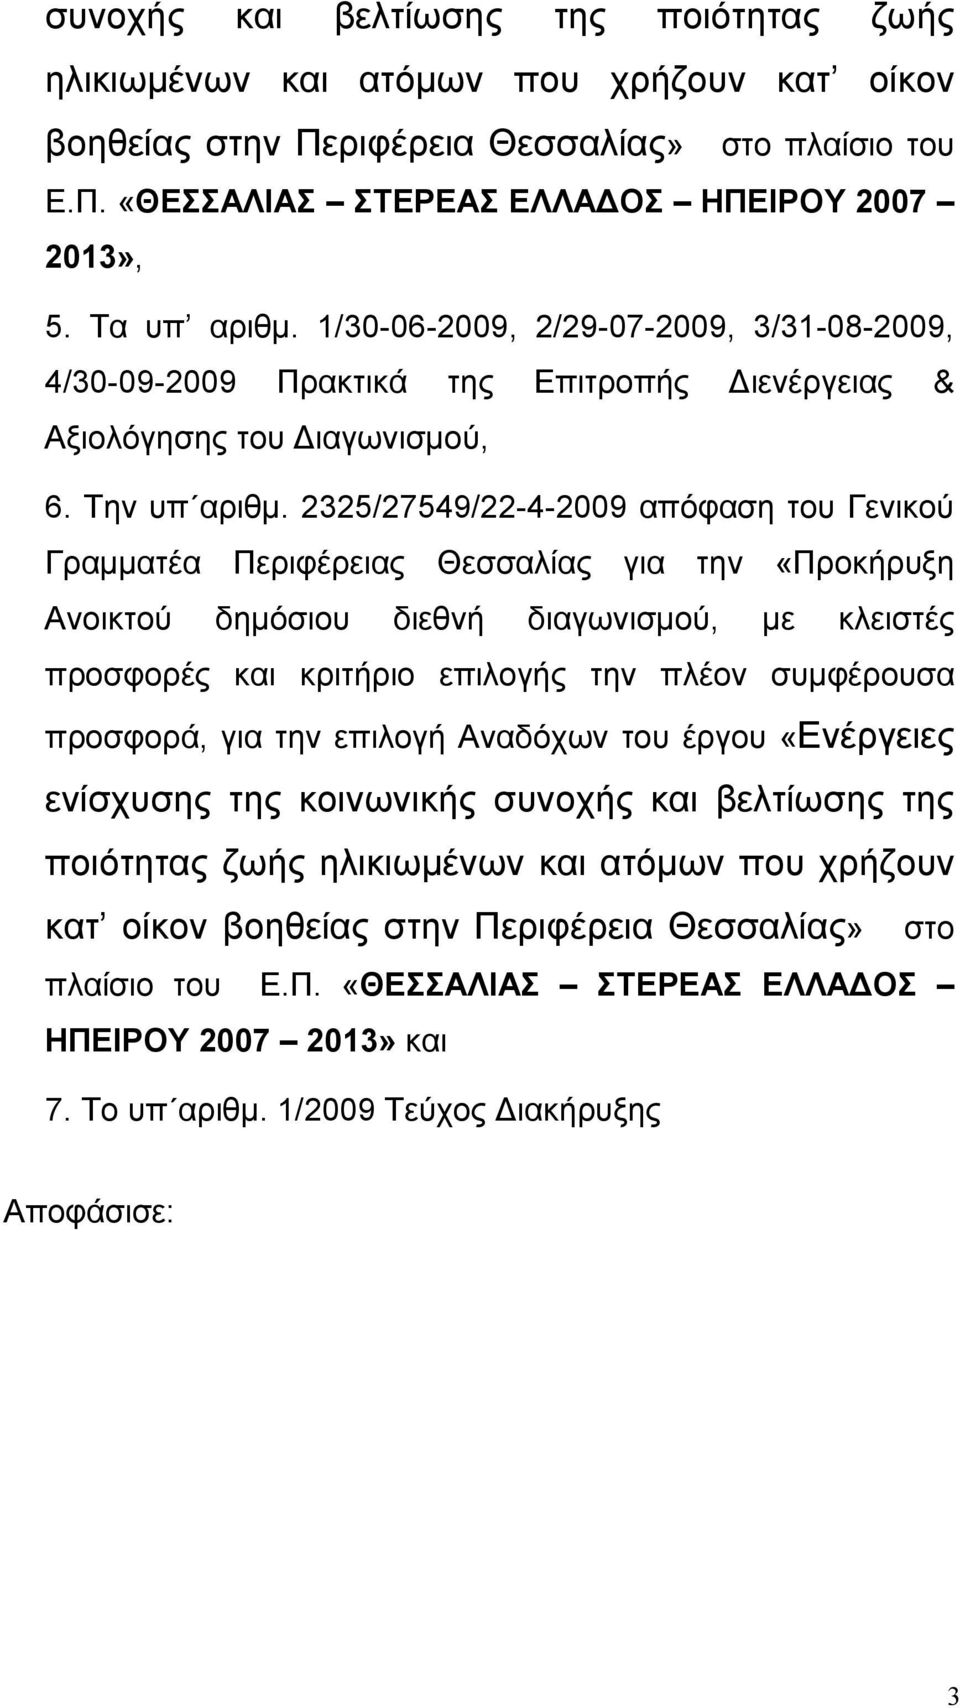 2325/27549/22-4-2009 απόφαση του Γενικού Γραμματέα Περιφέρειας Θεσσαλίας για την «Προκήρυξη Ανοικτού δημόσιου διεθνή διαγωνισμού, με κλειστές προσφορές και κριτήριο επιλογής την πλέον συμφέρουσα